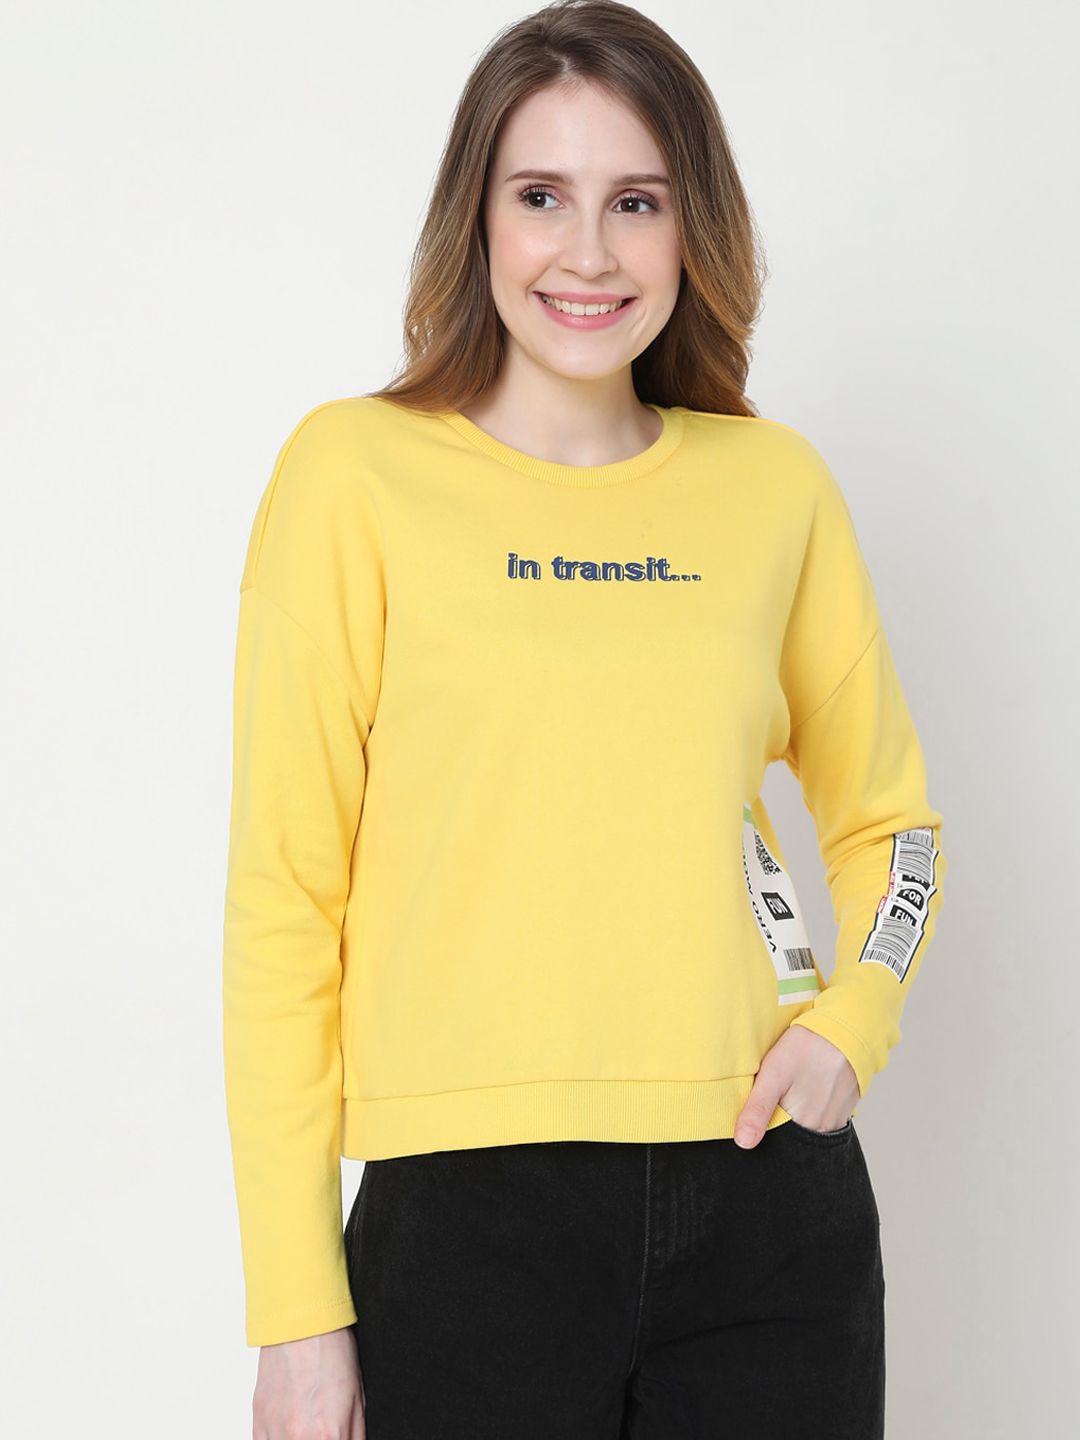 Vero Moda Women Yellow Printed Sweatshirt Price in India